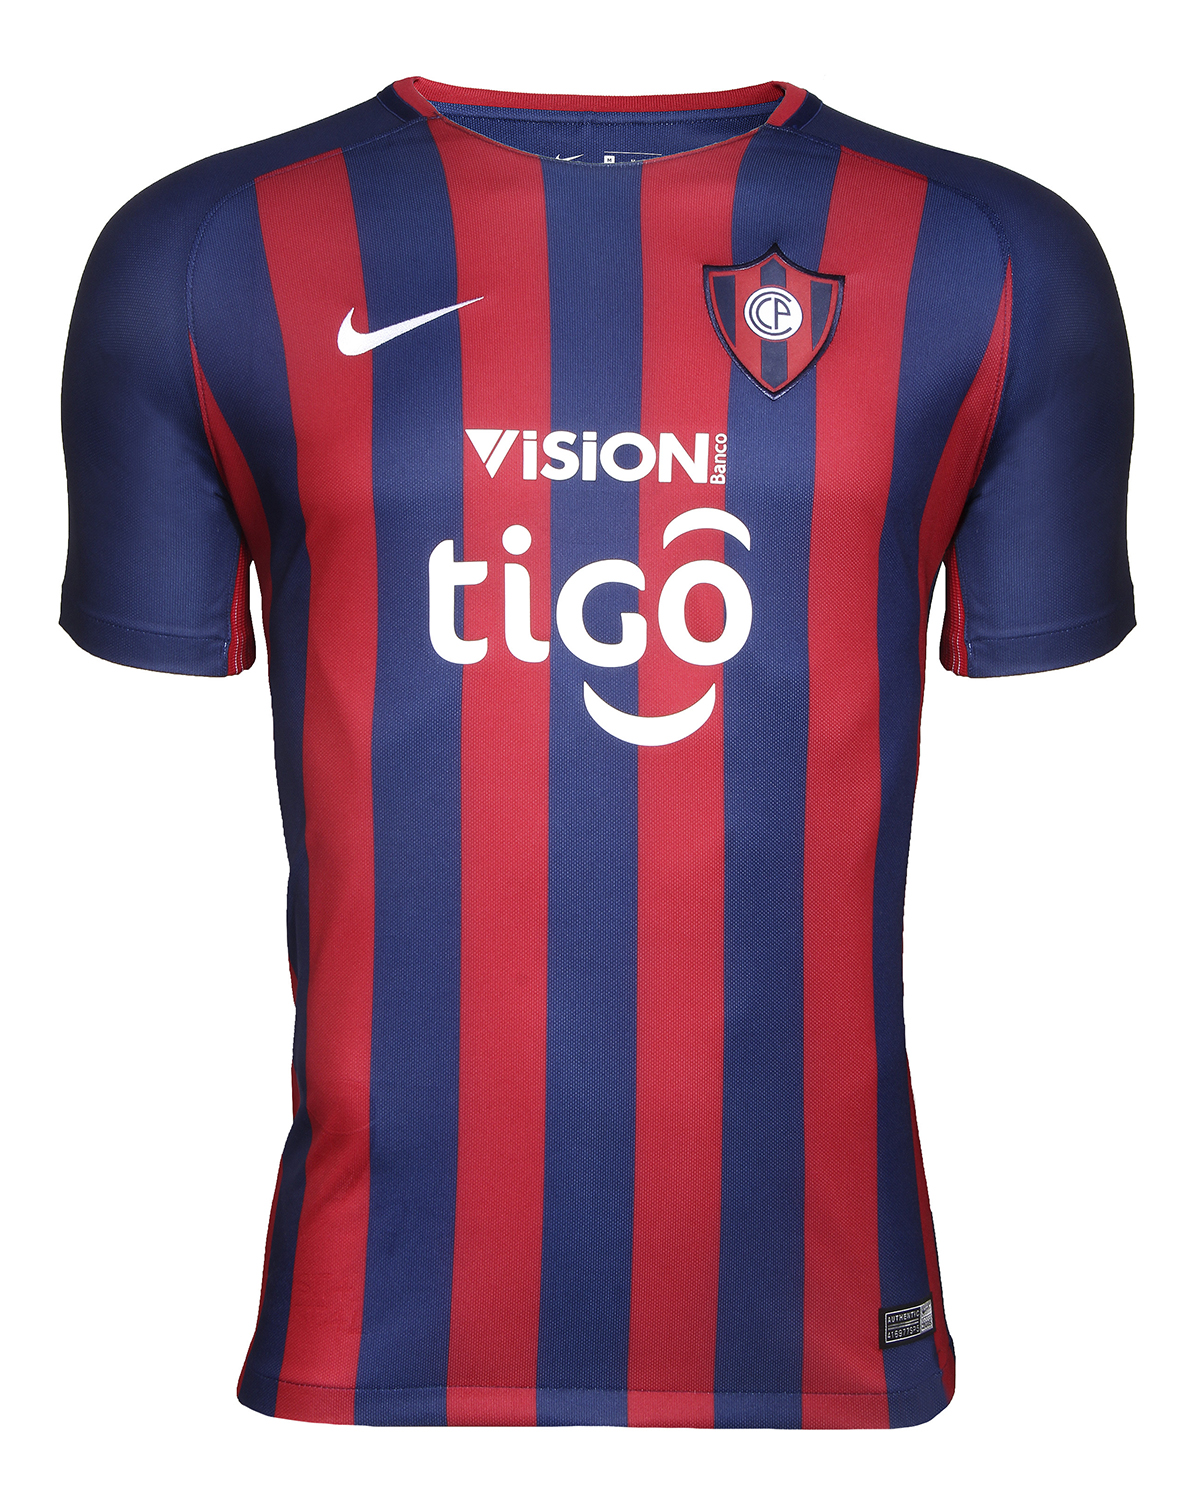 Camiseta Nike de Cerro Porteño 2018